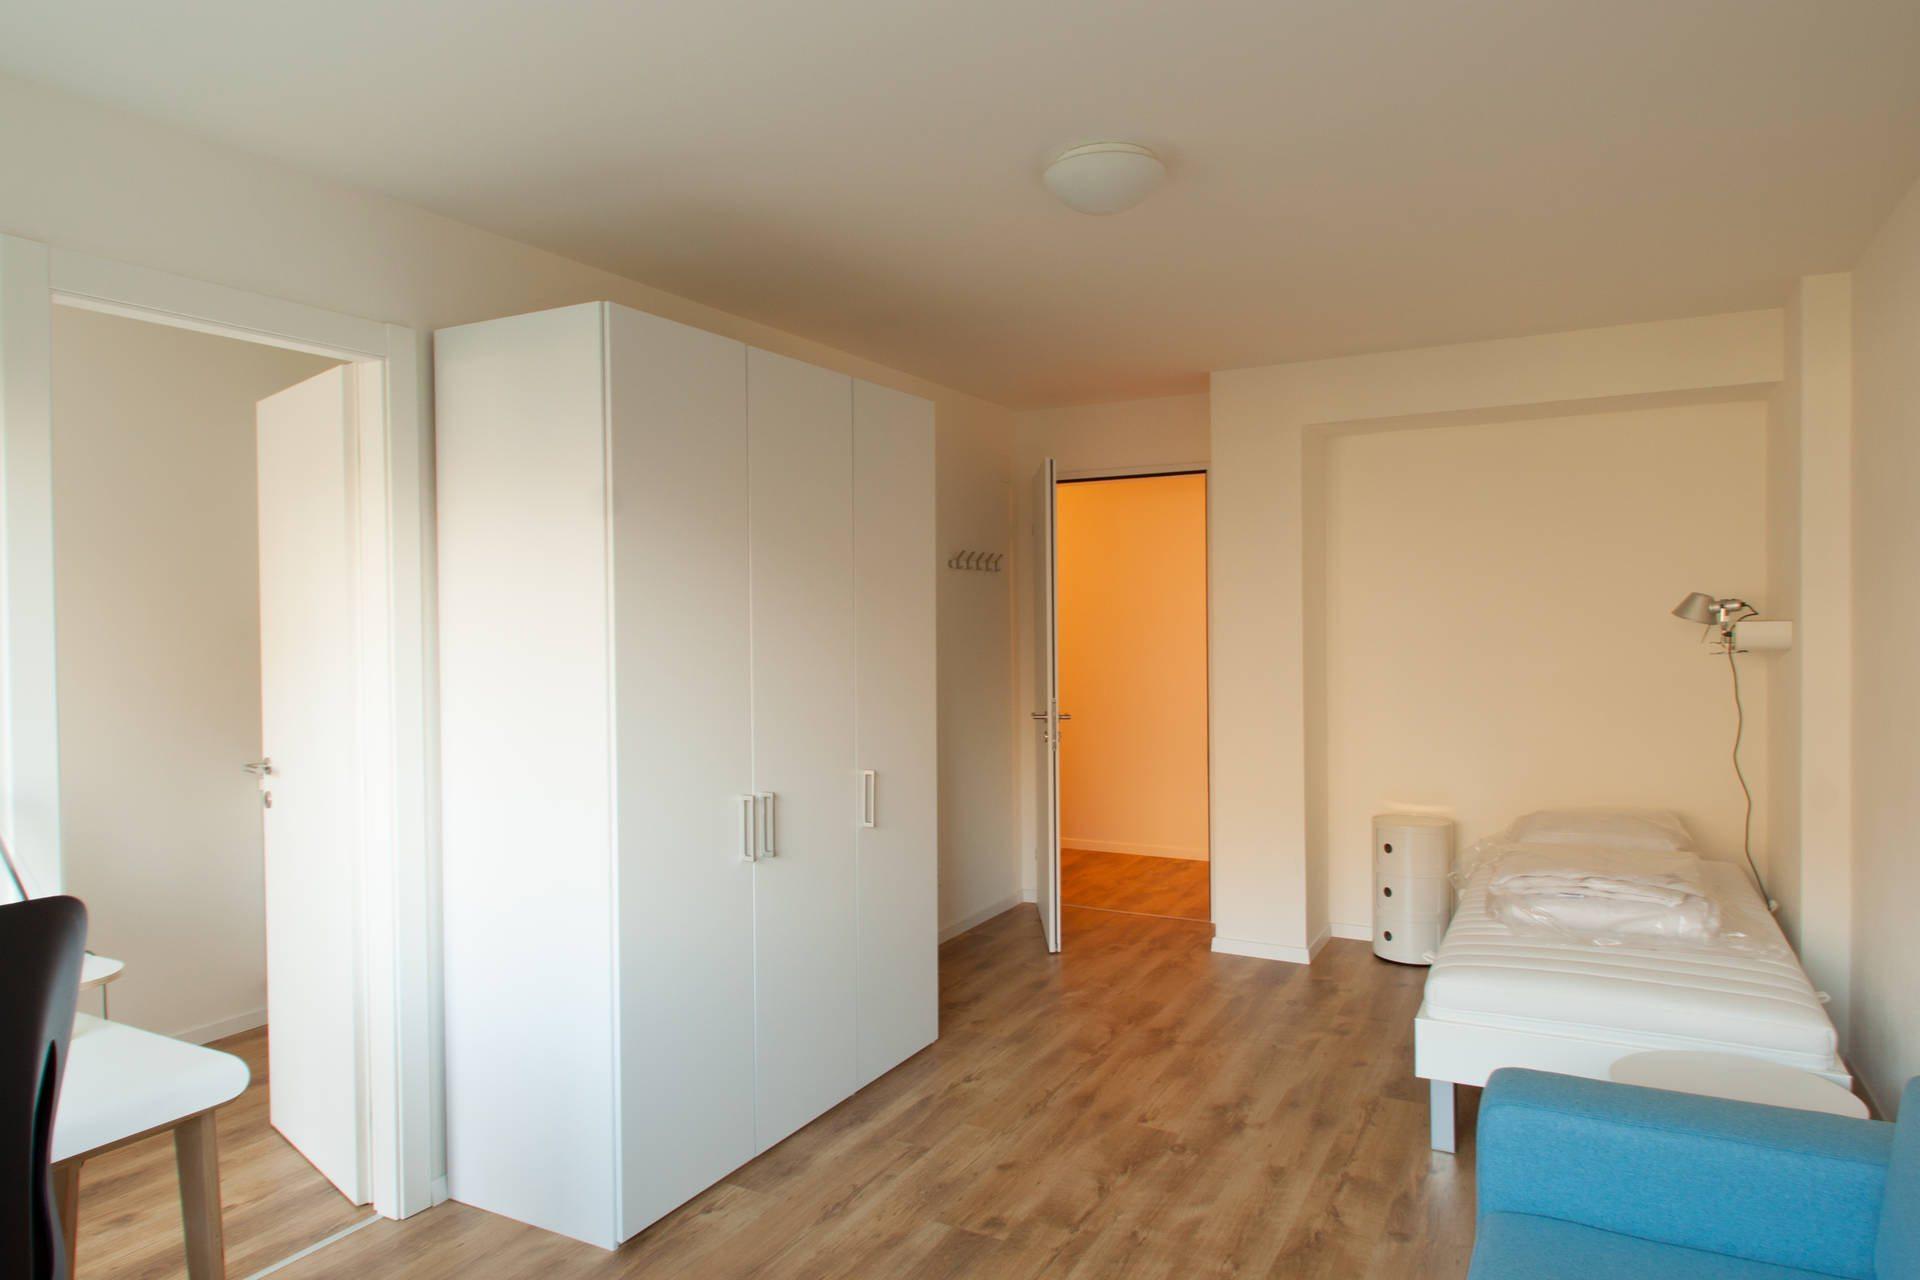 interni-stanza-ampliamento-in-legno-appartamenti-in-bioedilizia-